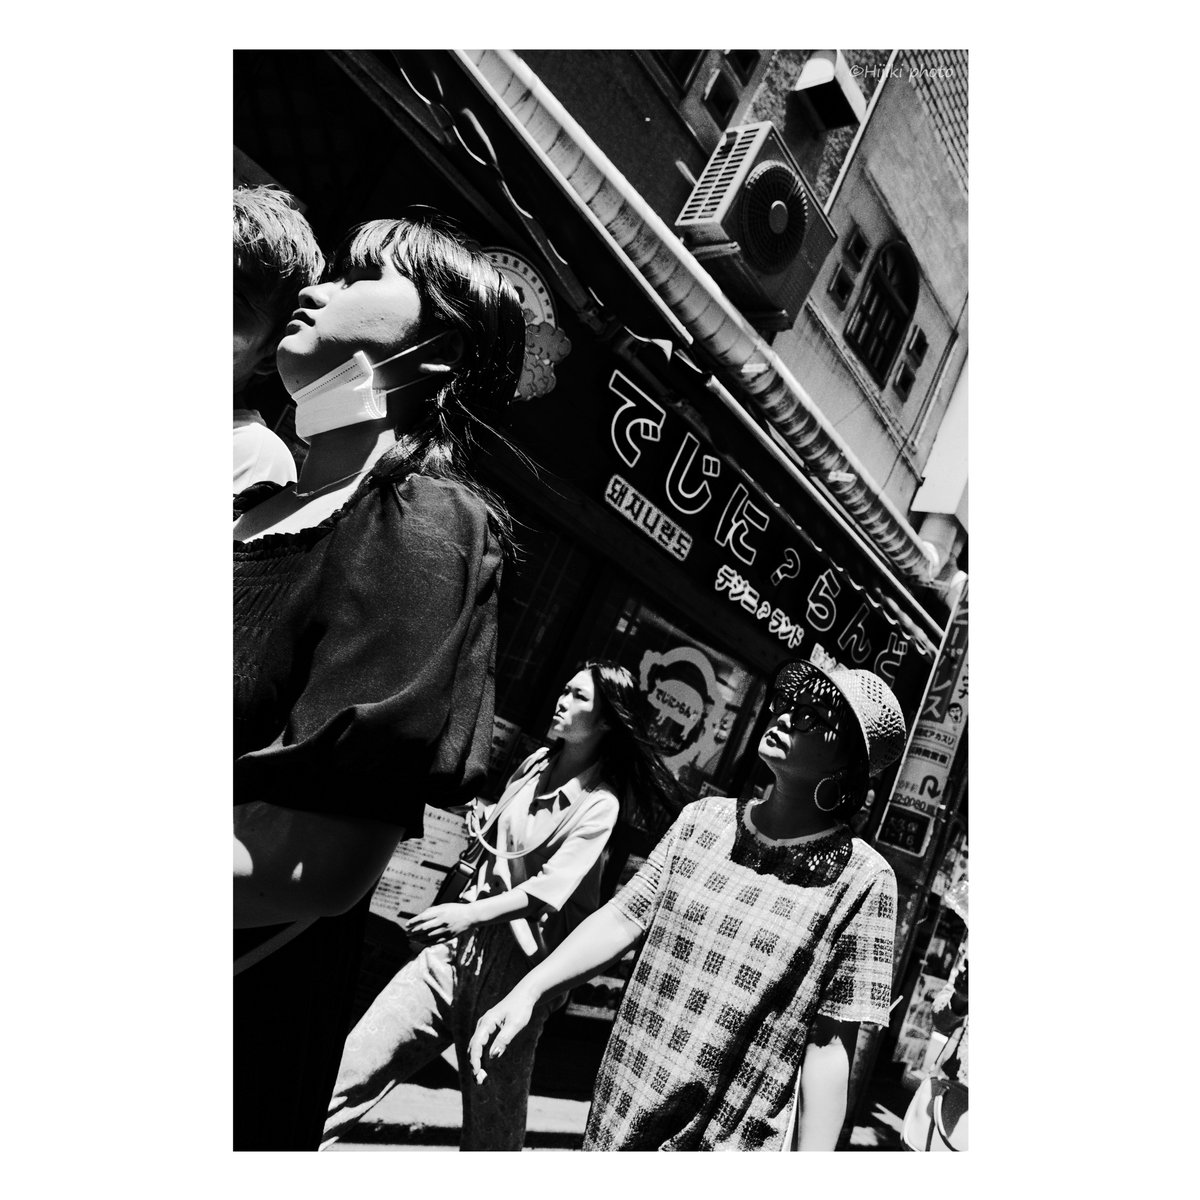 街の人々                

#Tokyo #路上写真 #率直で遠慮のない写真 #Hijikiphoto #monochrome #streetphotography #candidshots #キャンディッド